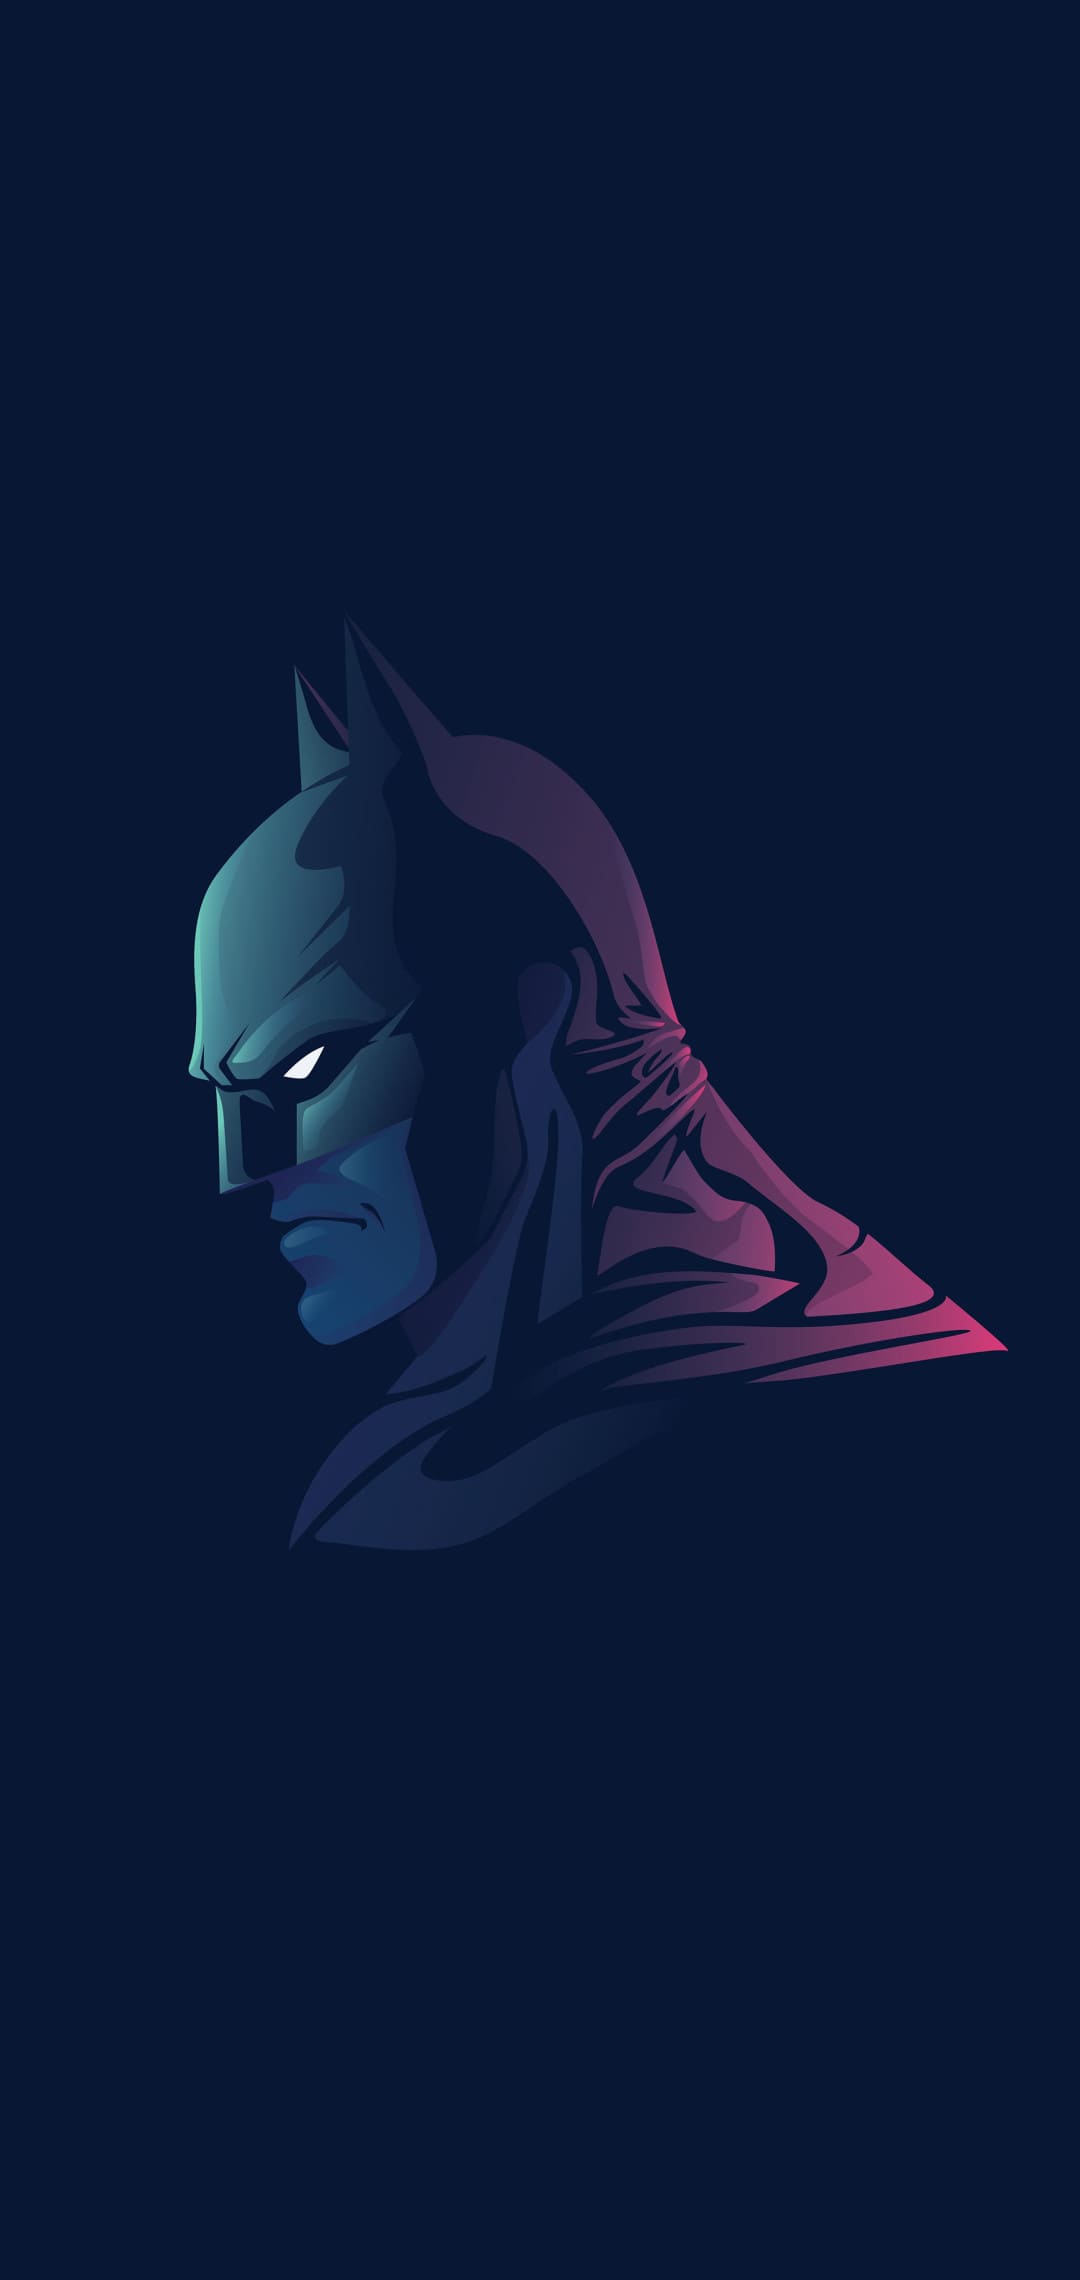 Wallpaper Batman